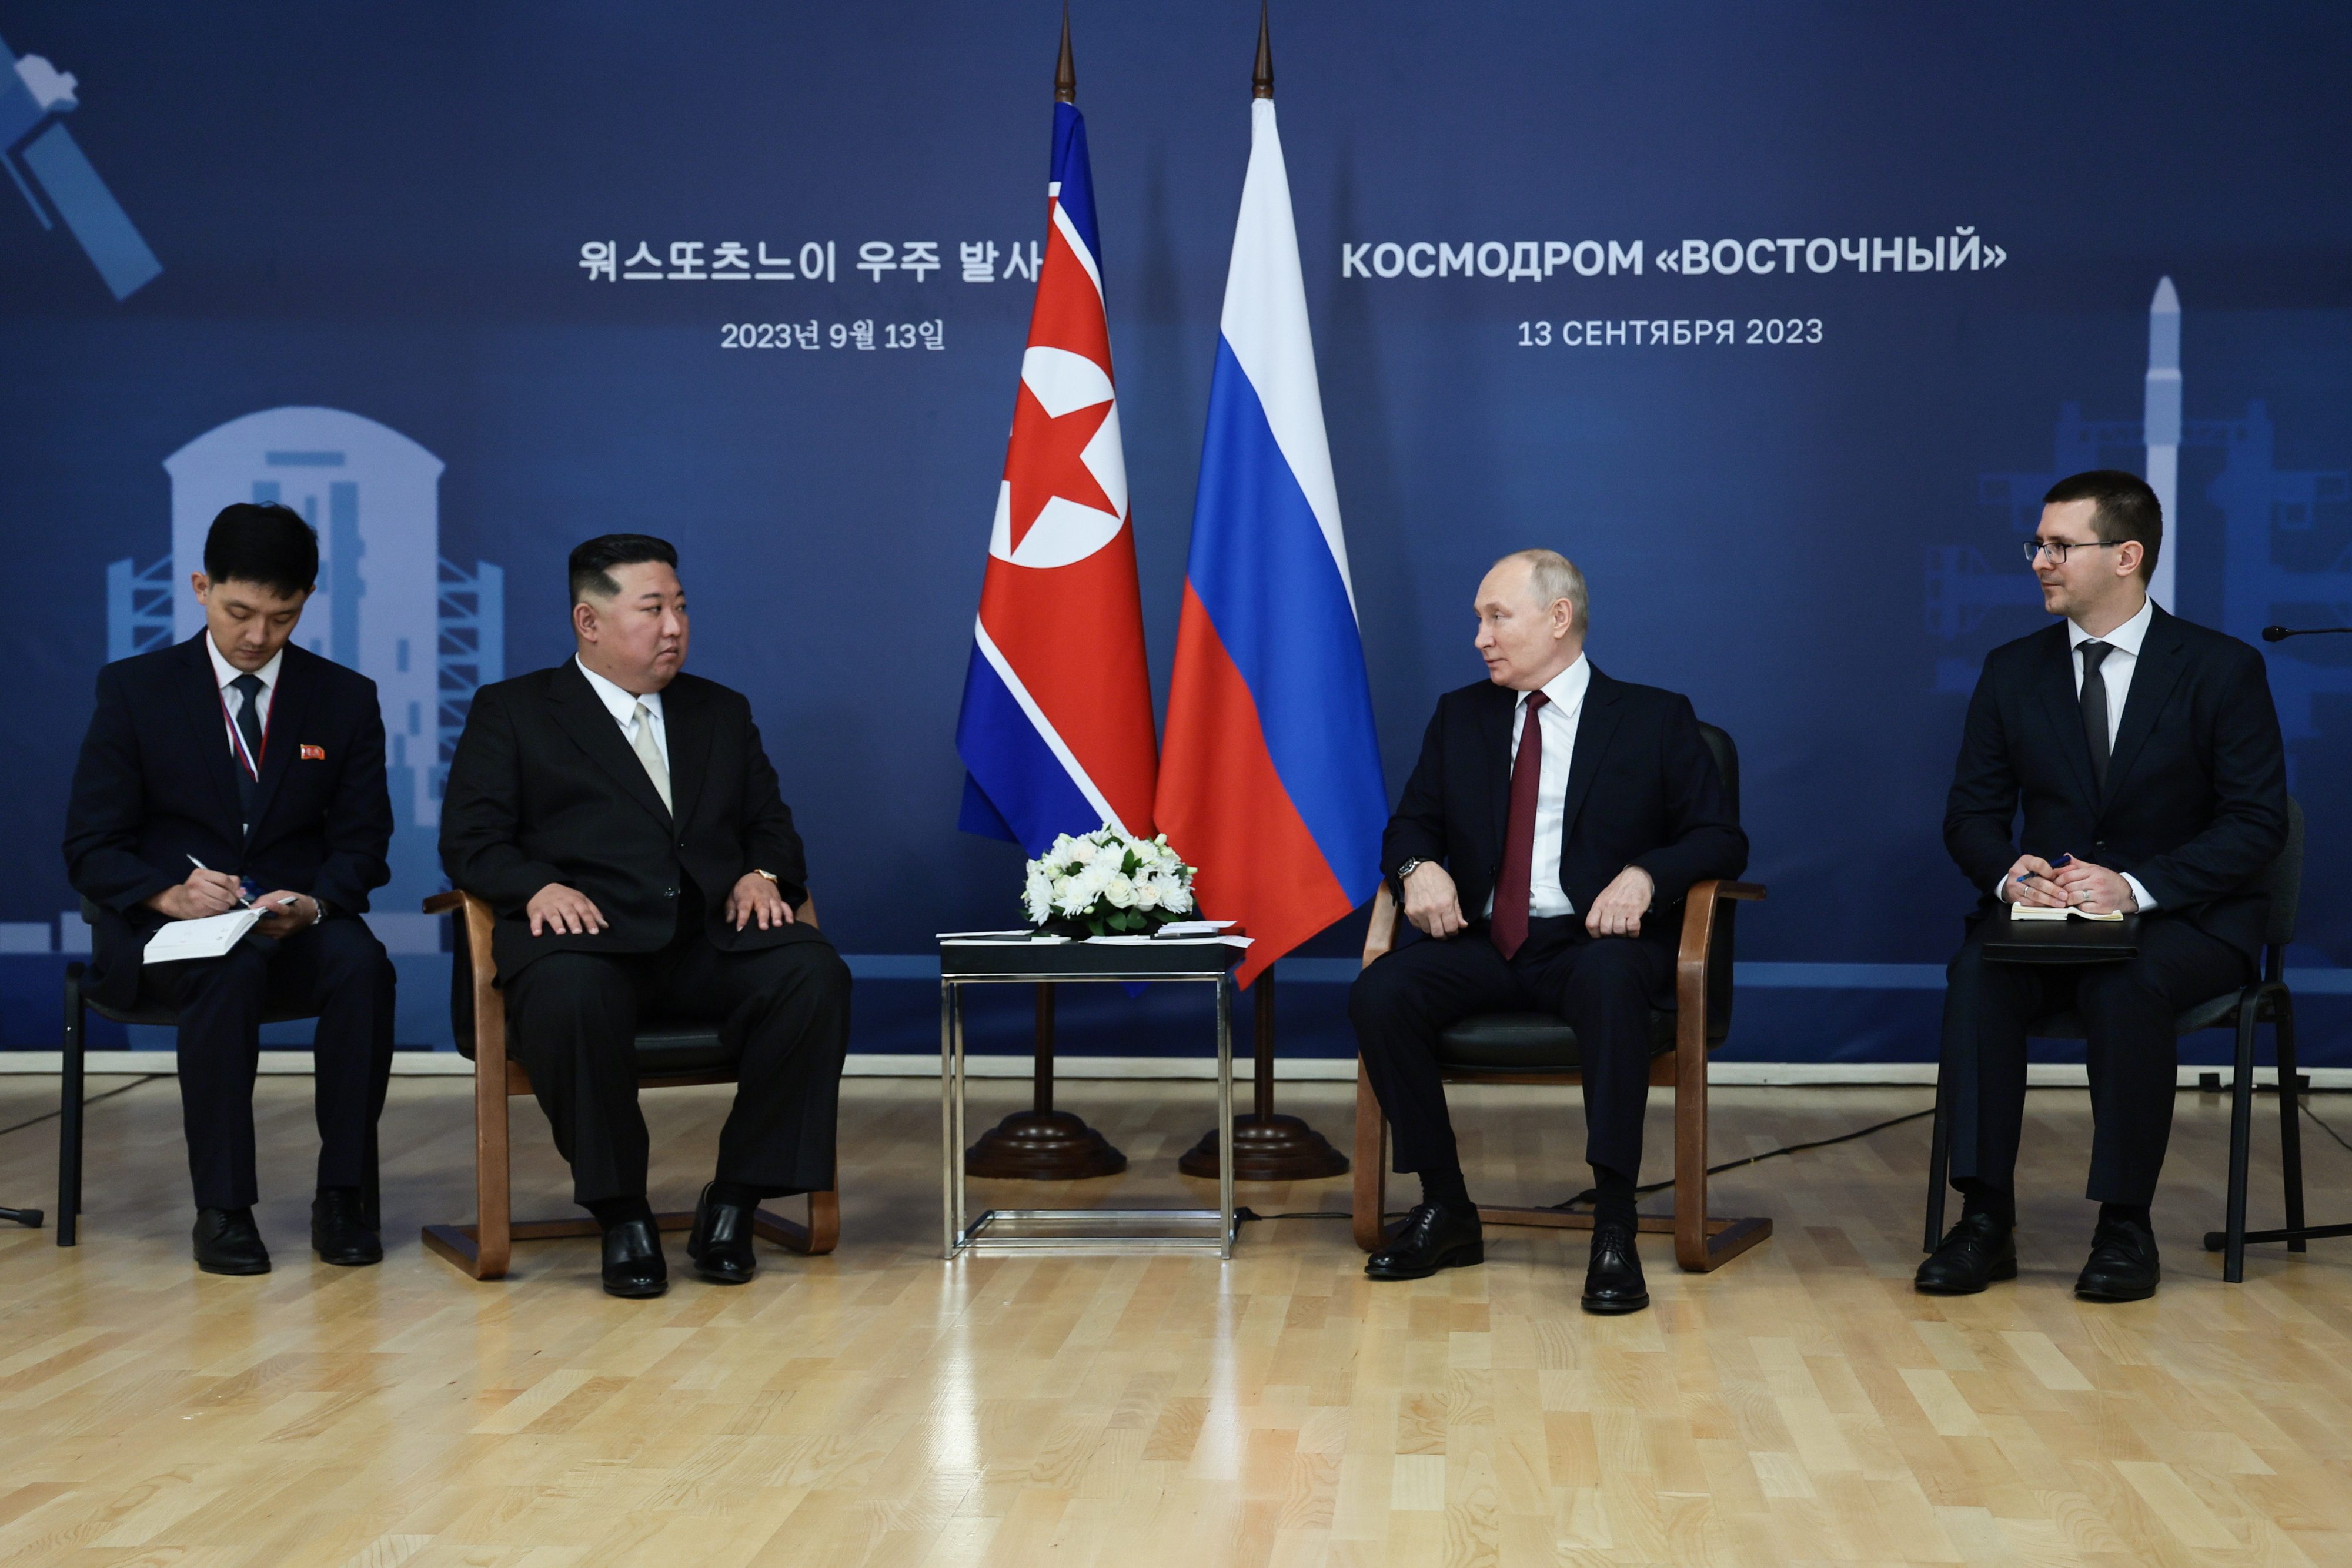 김정은(왼쪽 두 번째) 북한 국무위원장이 13일 러시아 아무르주 보스토치니 우주기지에서 블라디미르 푸틴(오른쪽 두 번째) 러시아 대통령과 회담하고 있다. 두 사람은 2019년 4월 회담 이후 4년 5개월 만에 다시 대면했다. 치올콥스키 타스 연합뉴스